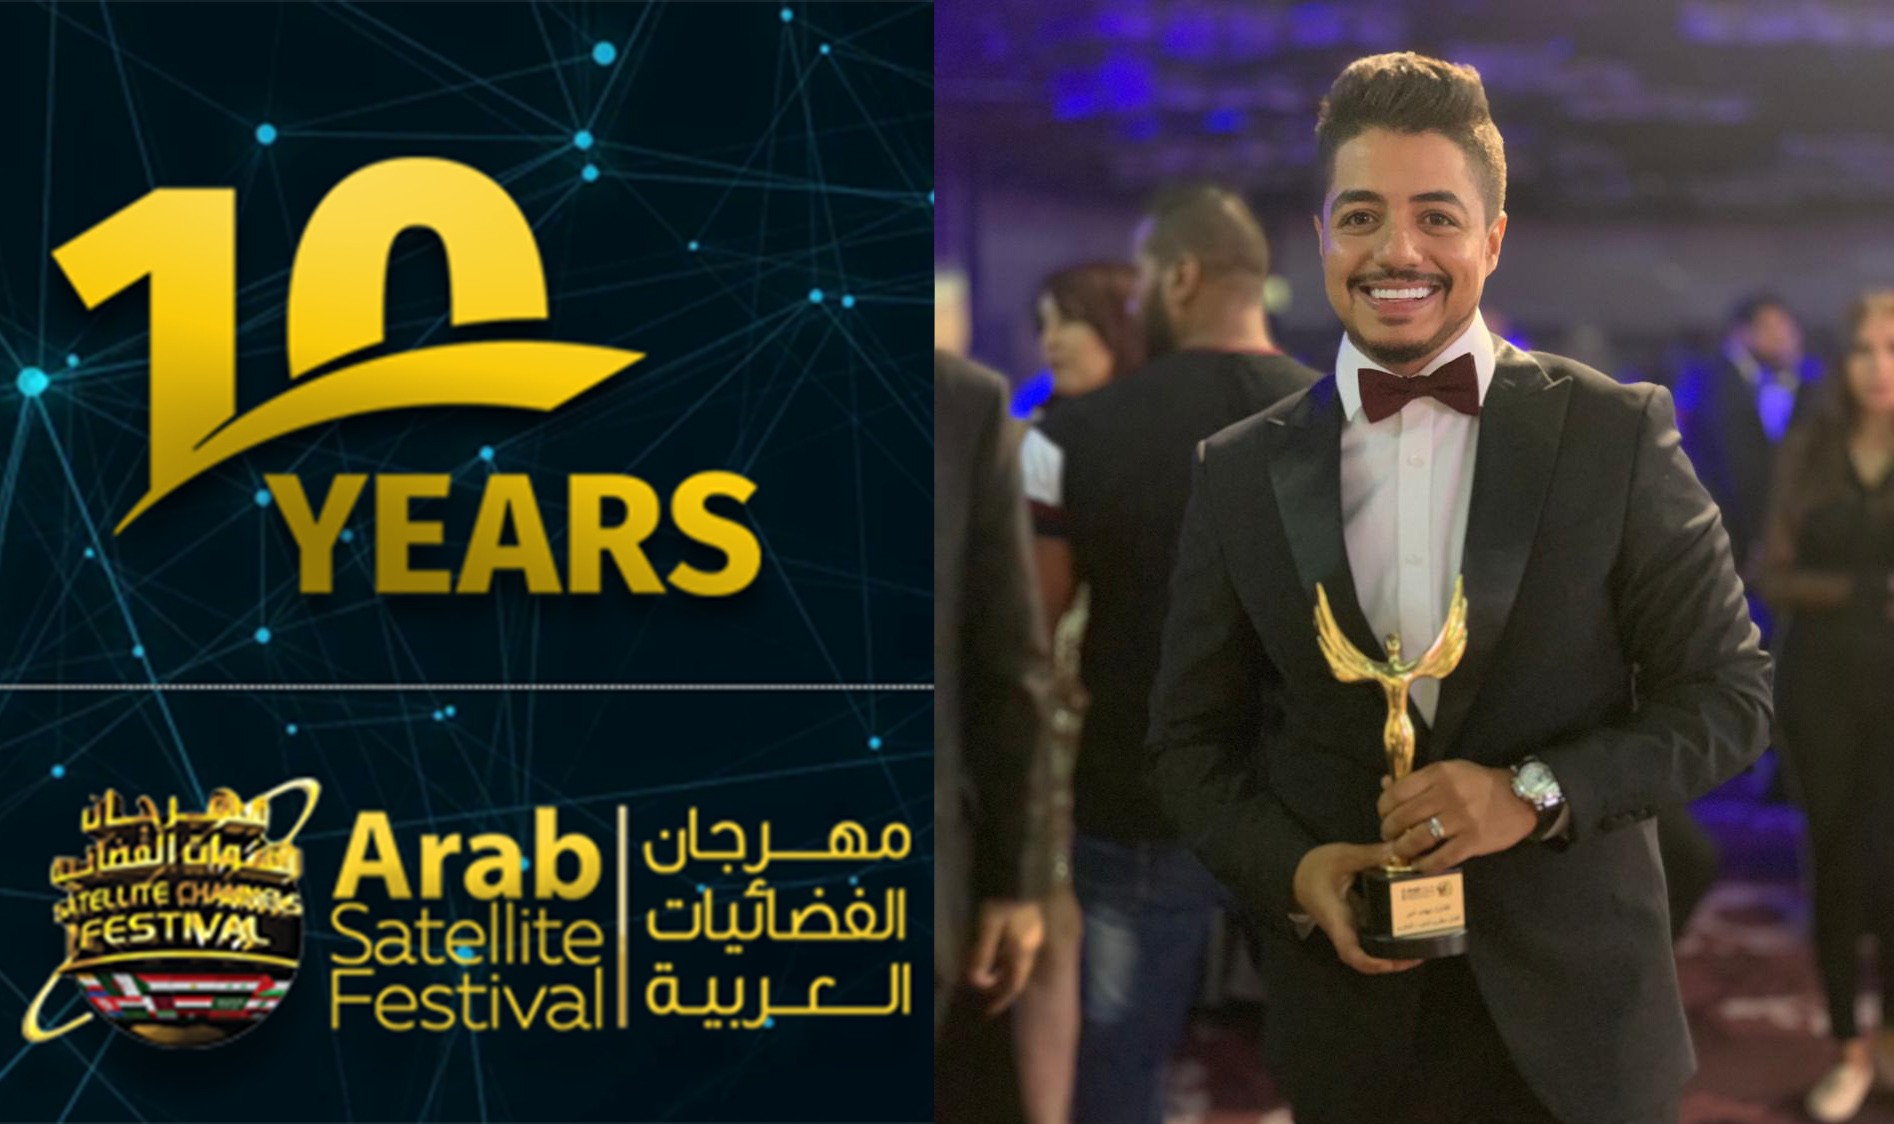 صورة إيهاب أمير يتوج بجائزة أفضل مطرب عربي شاب لسنة 2019